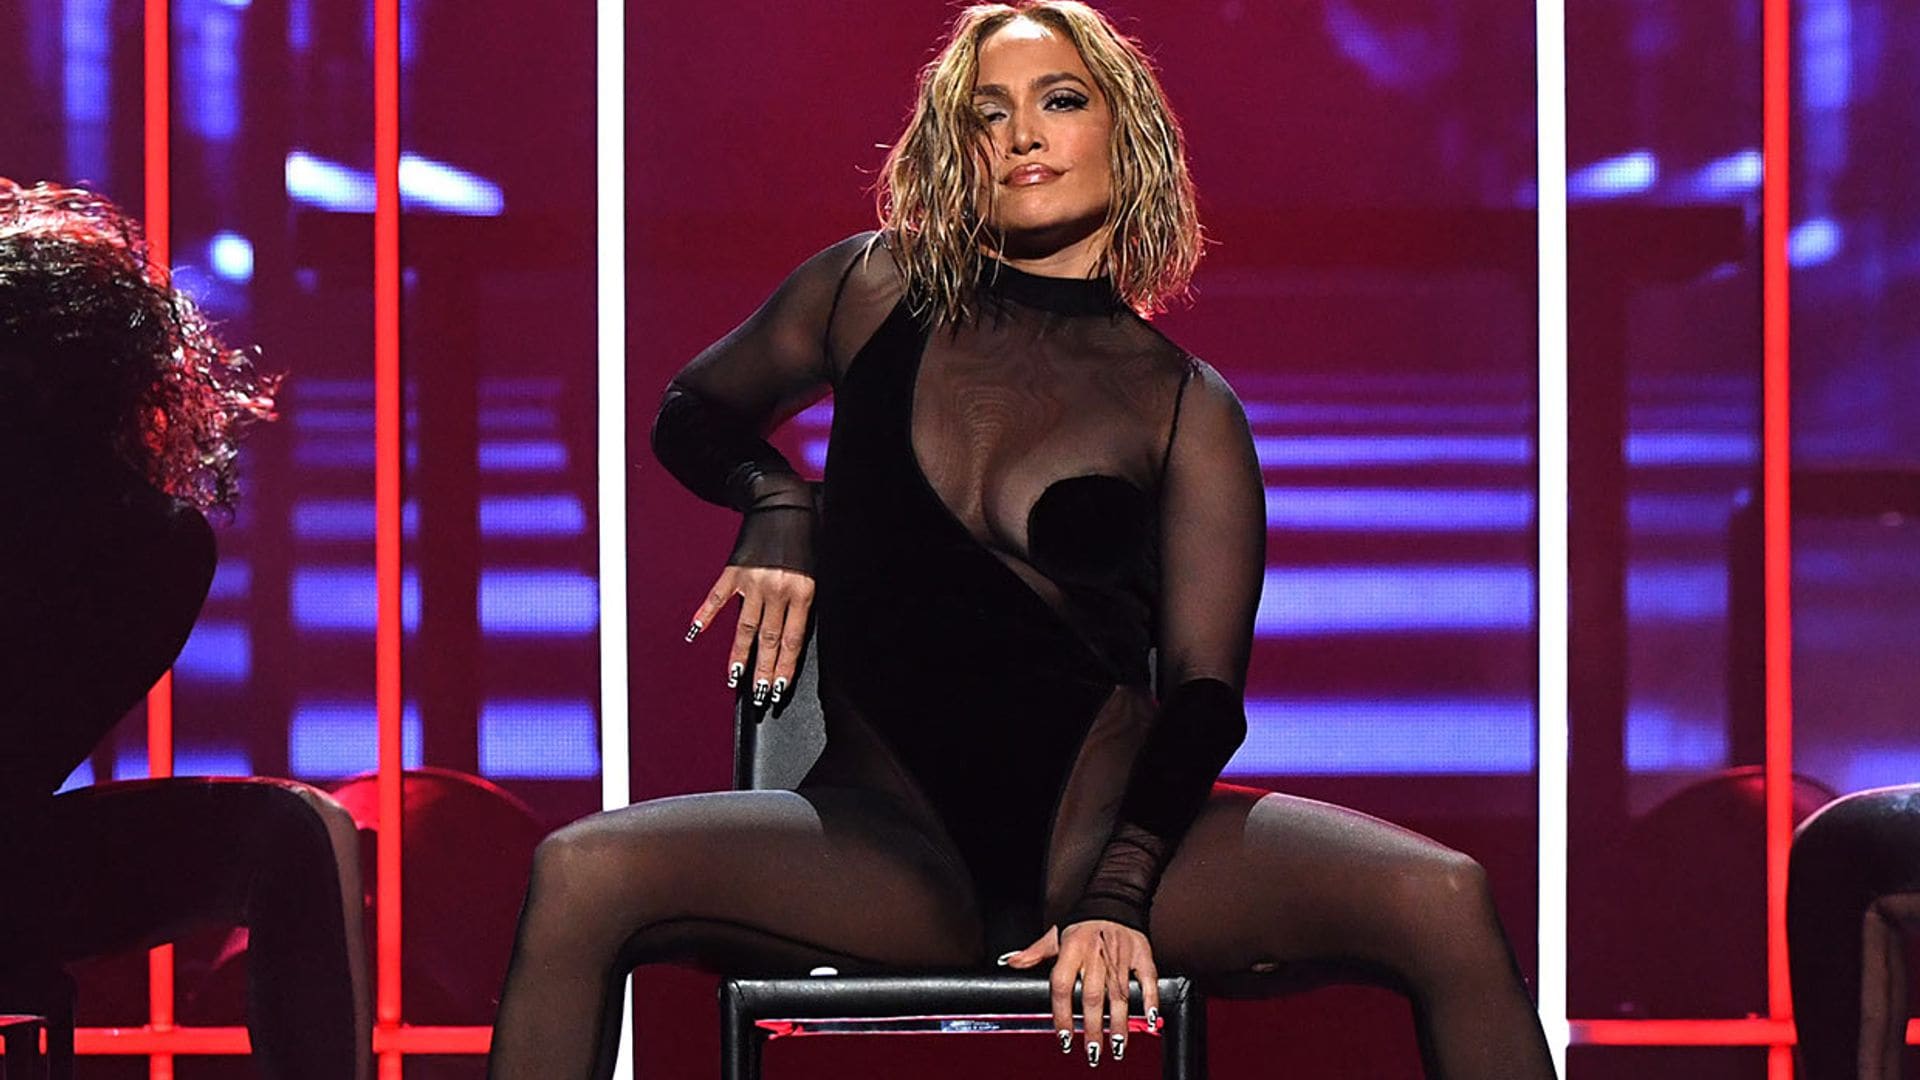 ¿Te habías fijado? El mensaje oculto en las uñas de Jennifer Lopez durante los AMAs